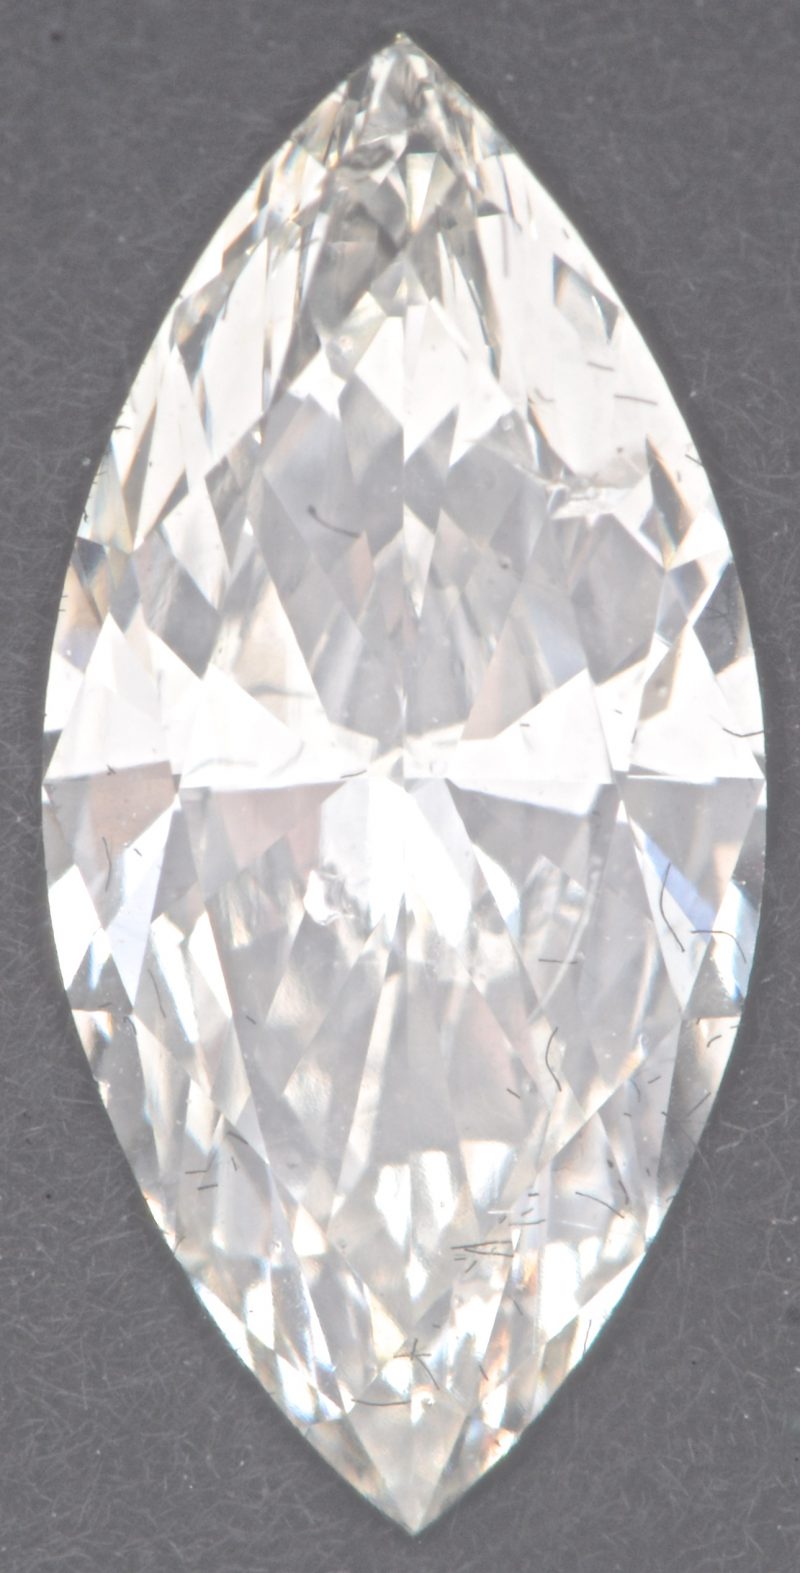 Een in markies geslepen diamant van 0,52 ct. Kleur I. SI1. Met HRD certificaat.